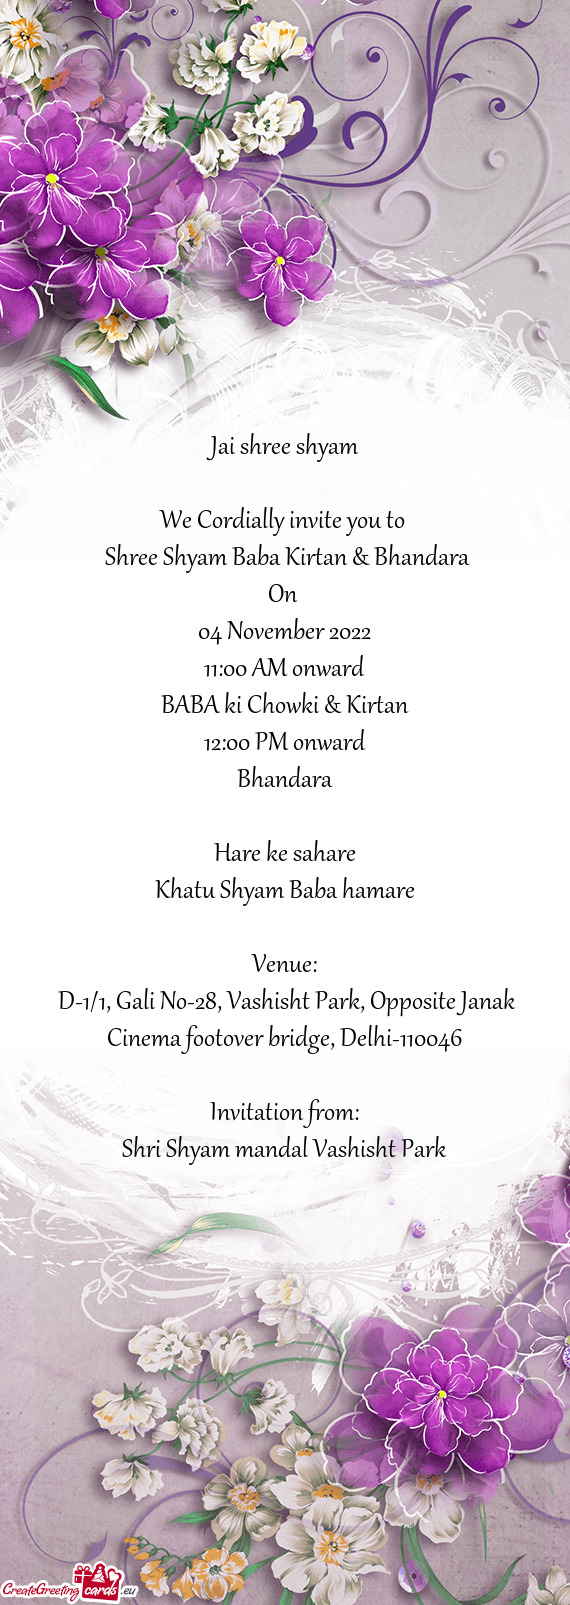 Shree Shyam Baba Kirtan & Bhandara